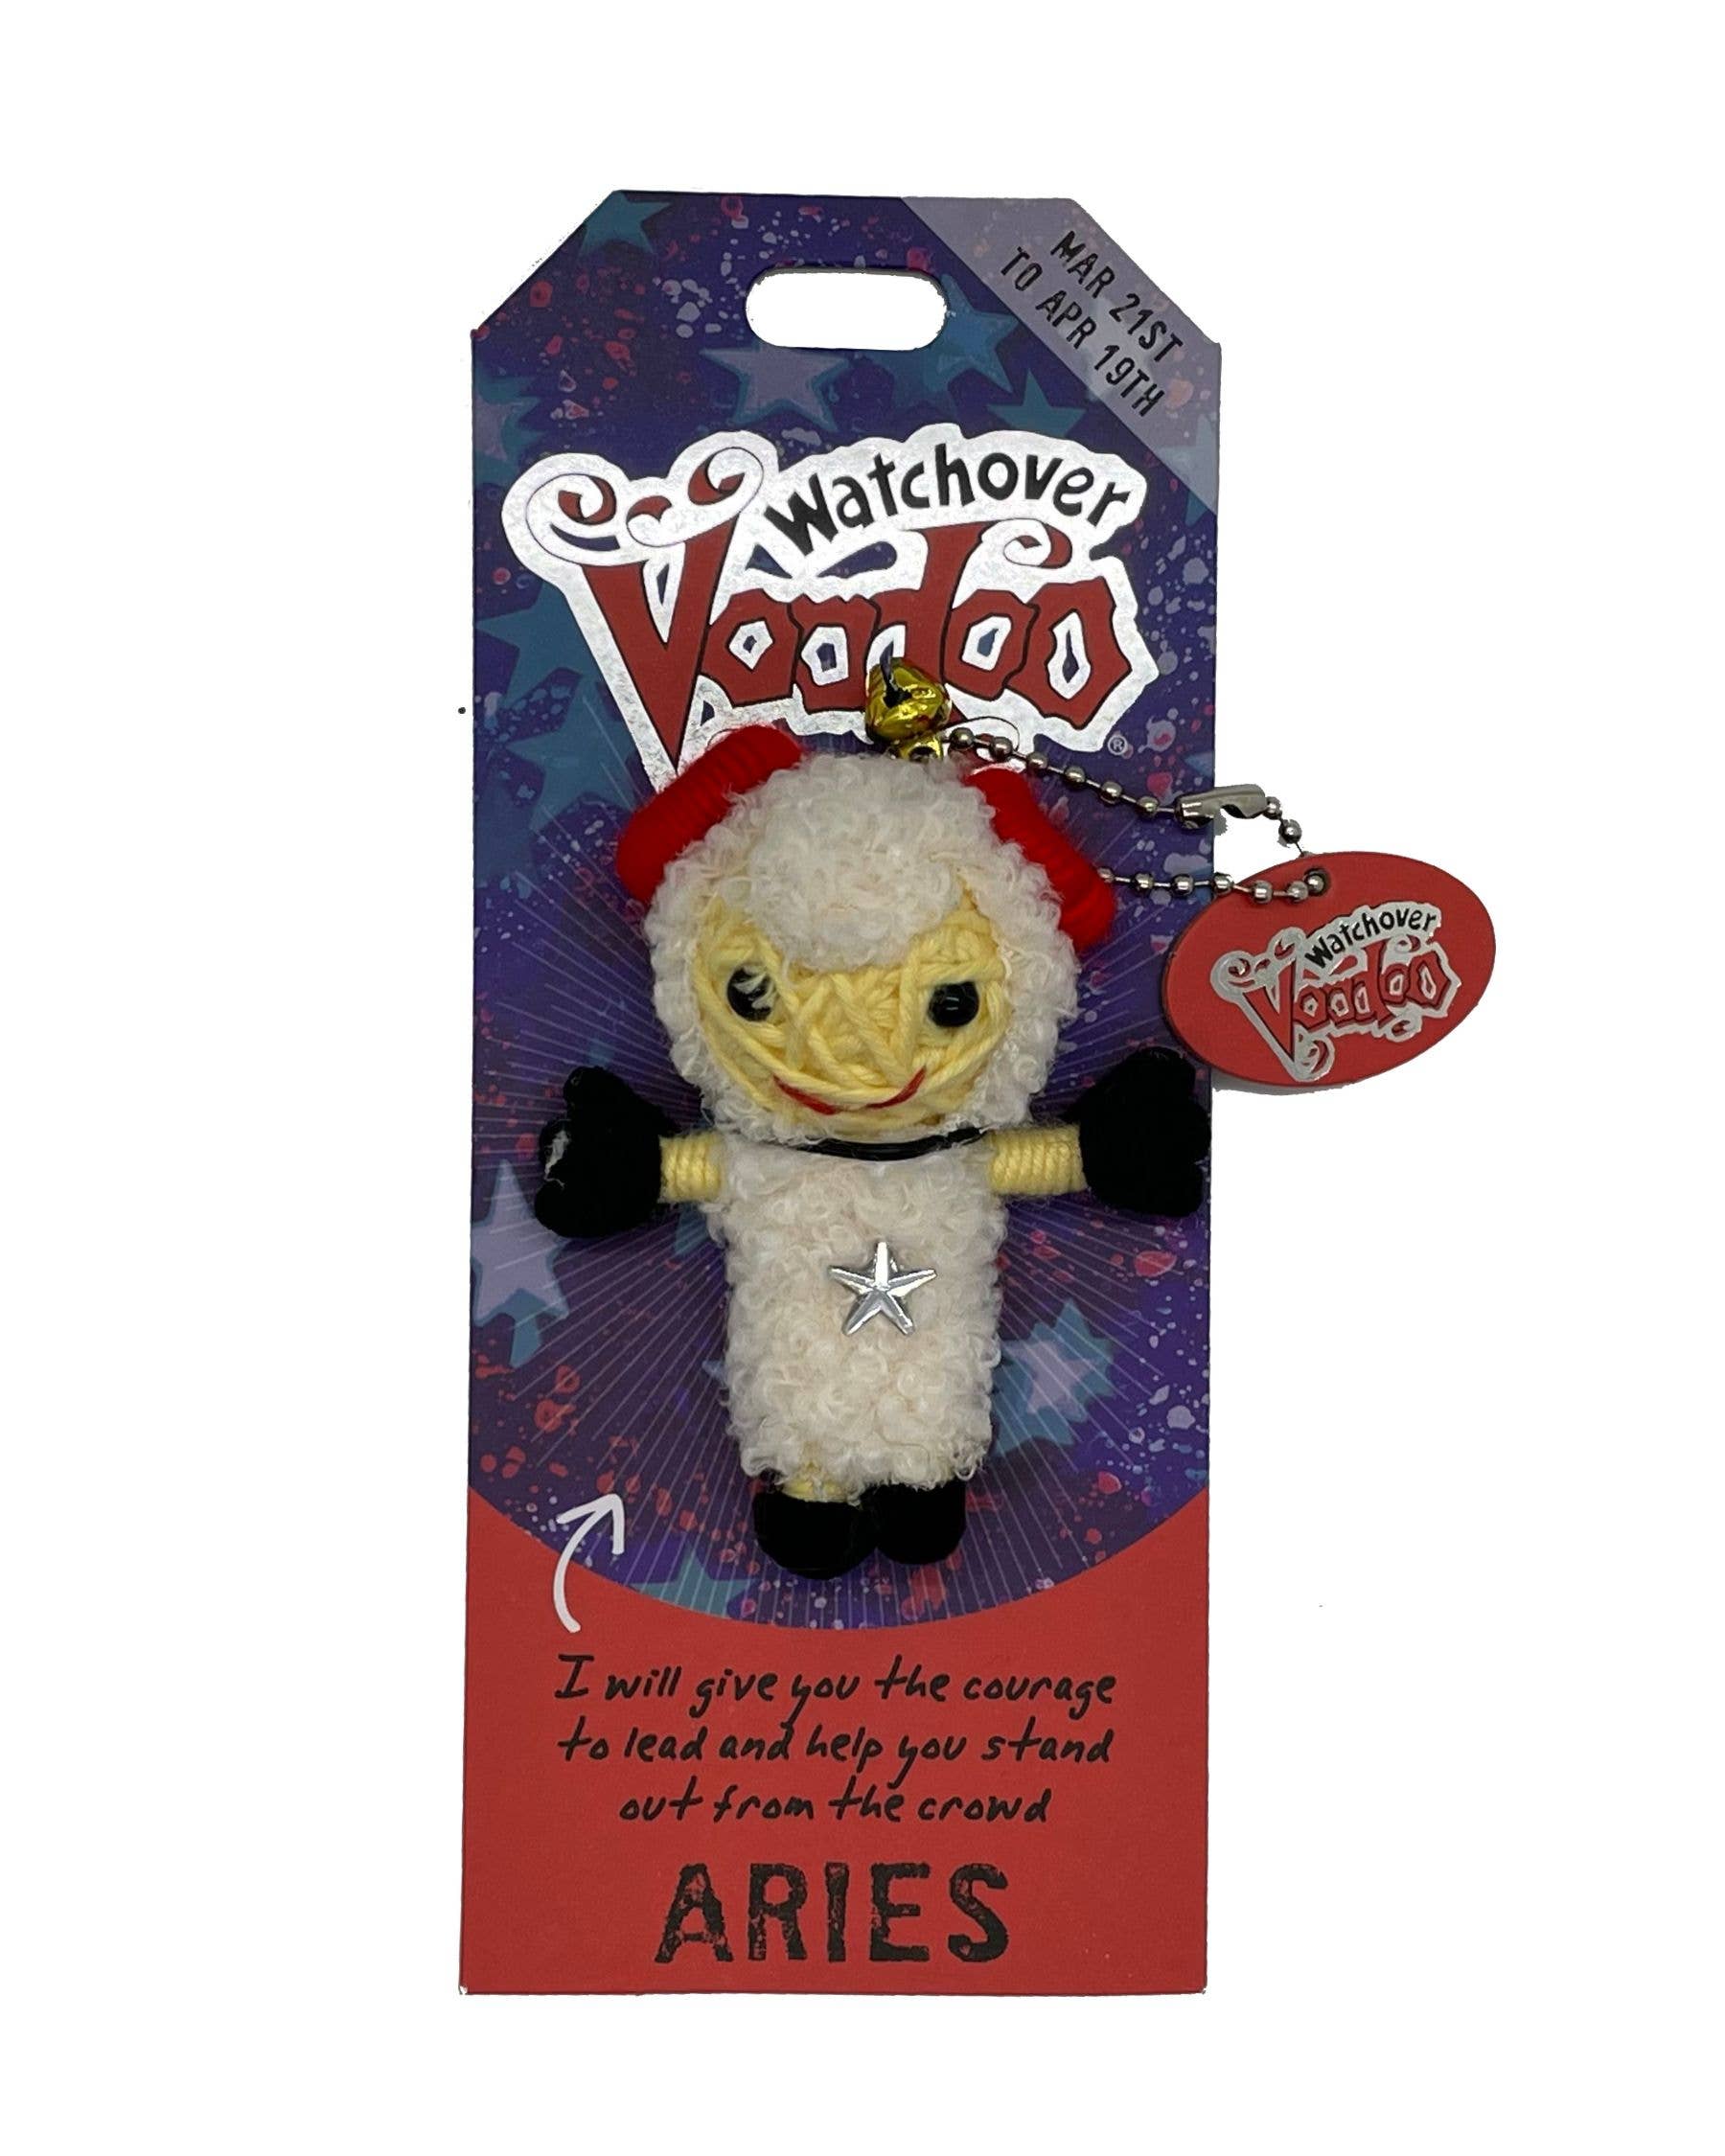 Aries  - Watchover Voodoo Dolls